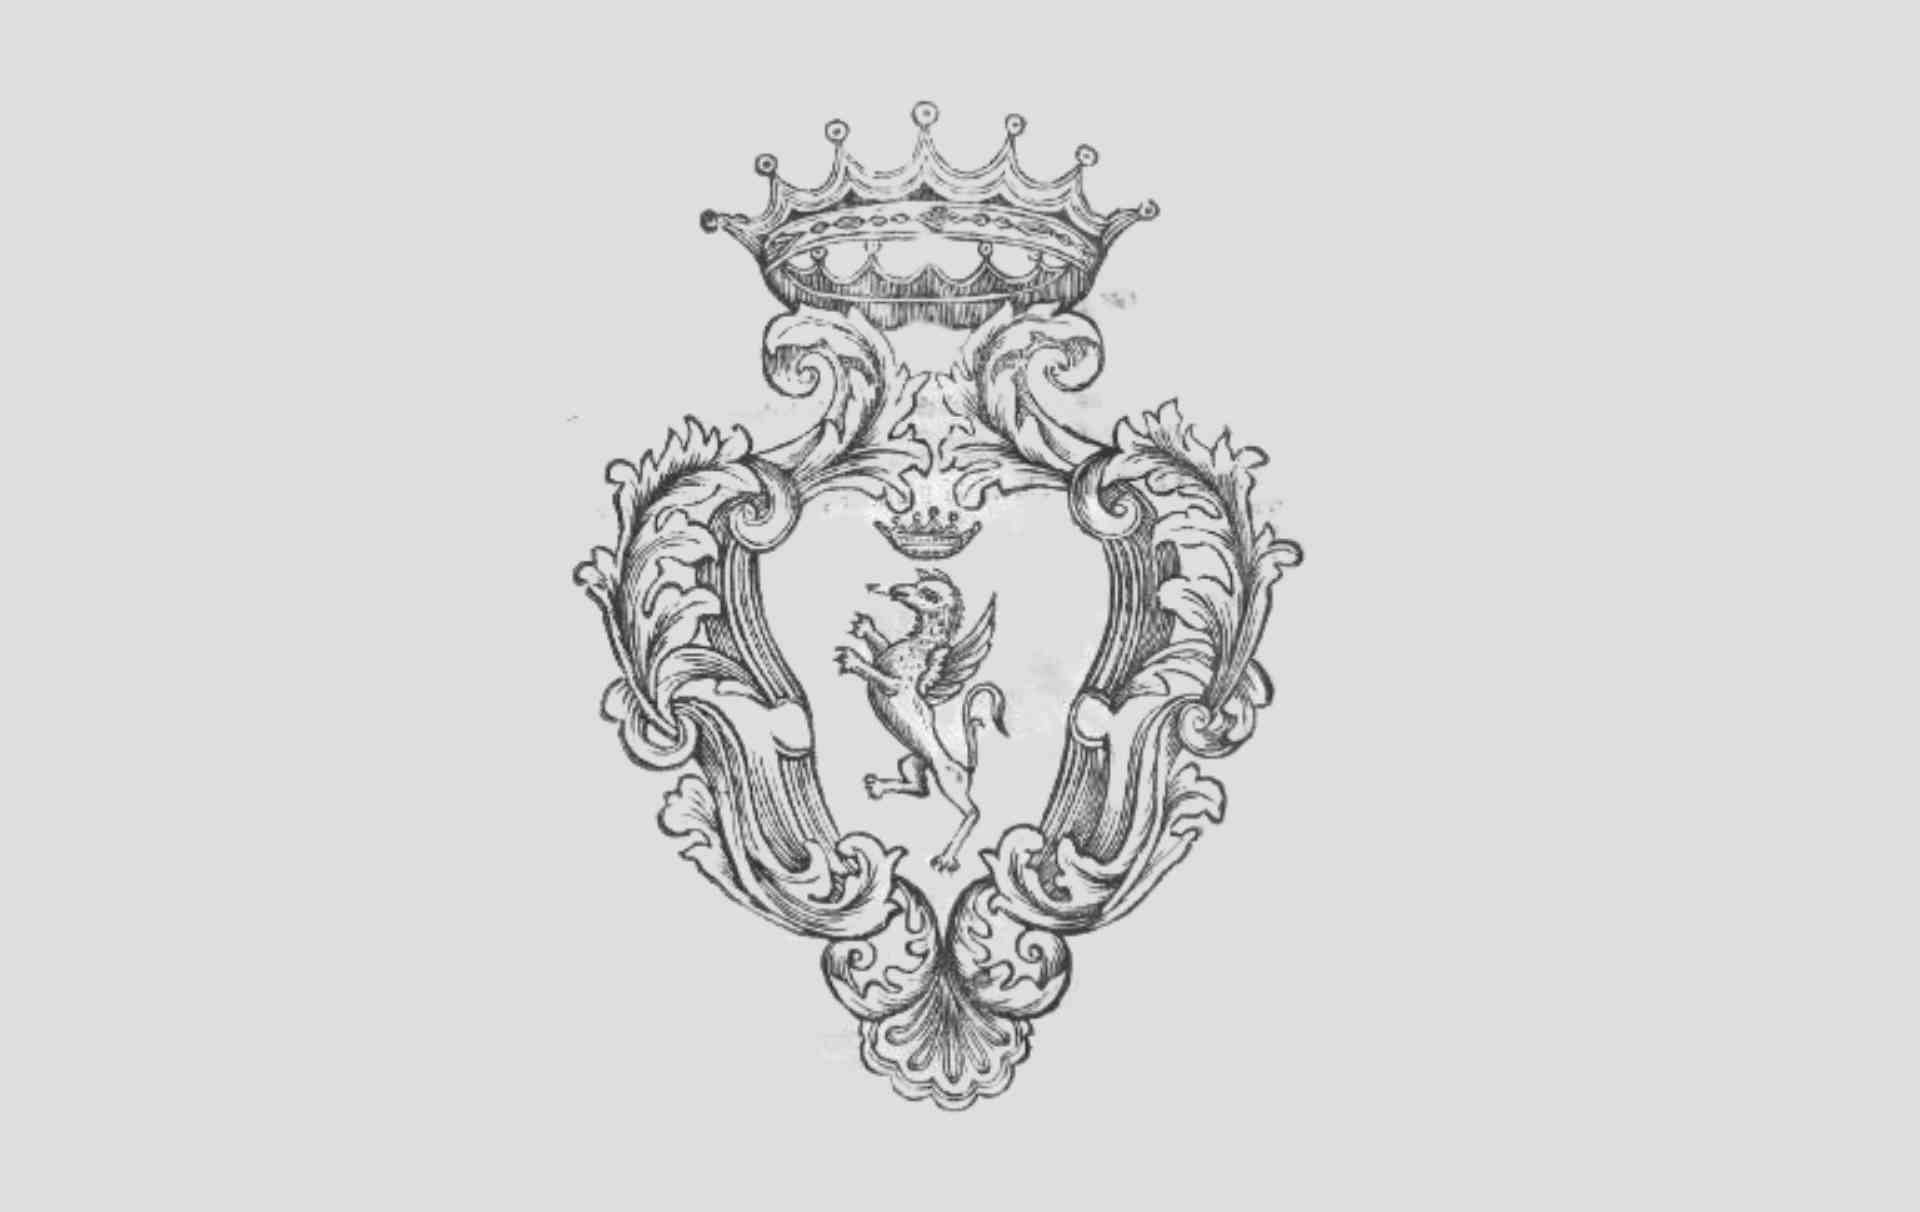 Stemma del Grifone di Narni nella copertina dell'antico statuto